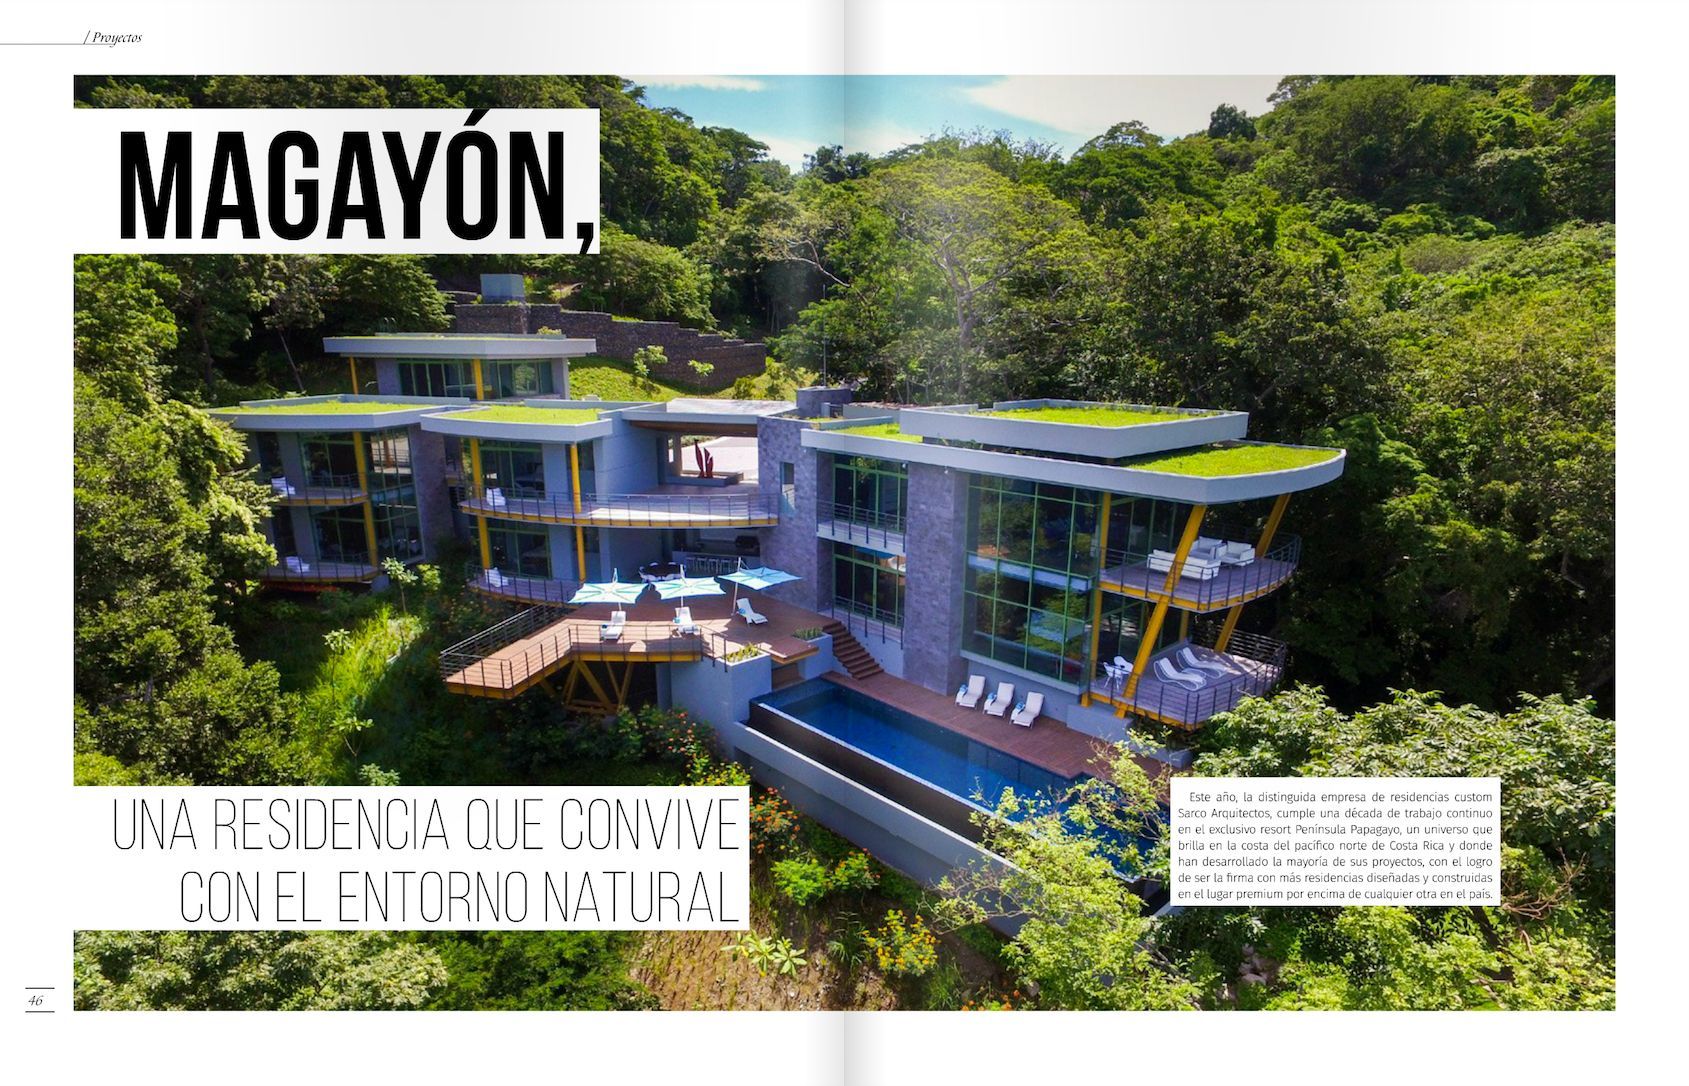 Casa magayon on a magazine